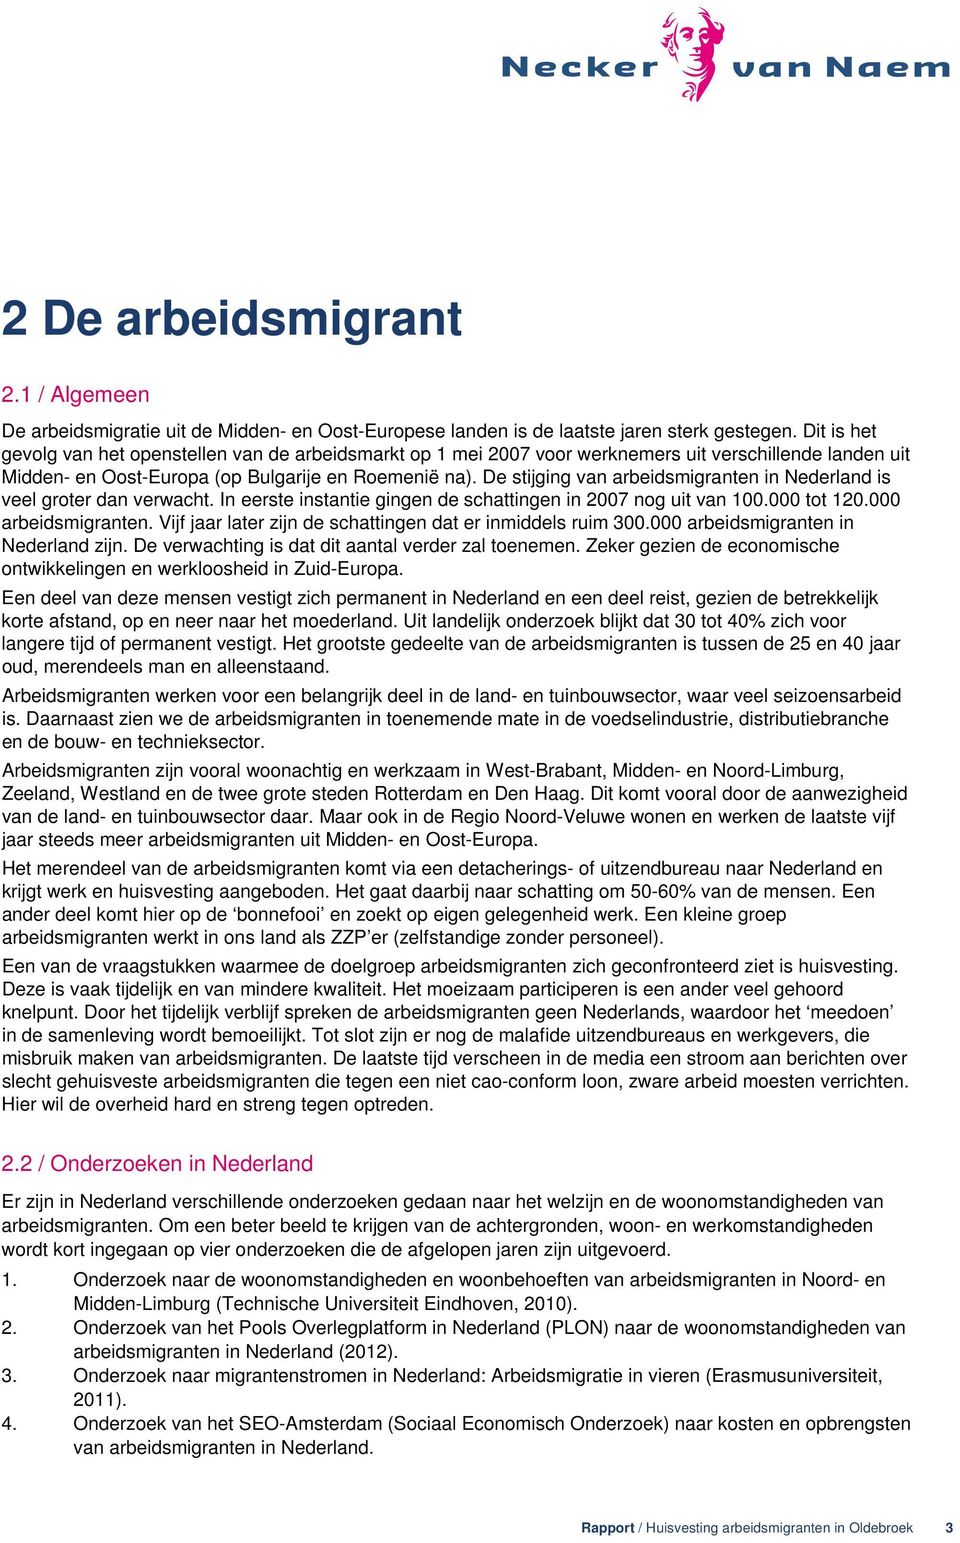 De stijging van arbeidsmigranten in Nederland is veel groter dan verwacht. In eerste instantie gingen de schattingen in 2007 nog uit van 100.000 tot 120.000 arbeidsmigranten.